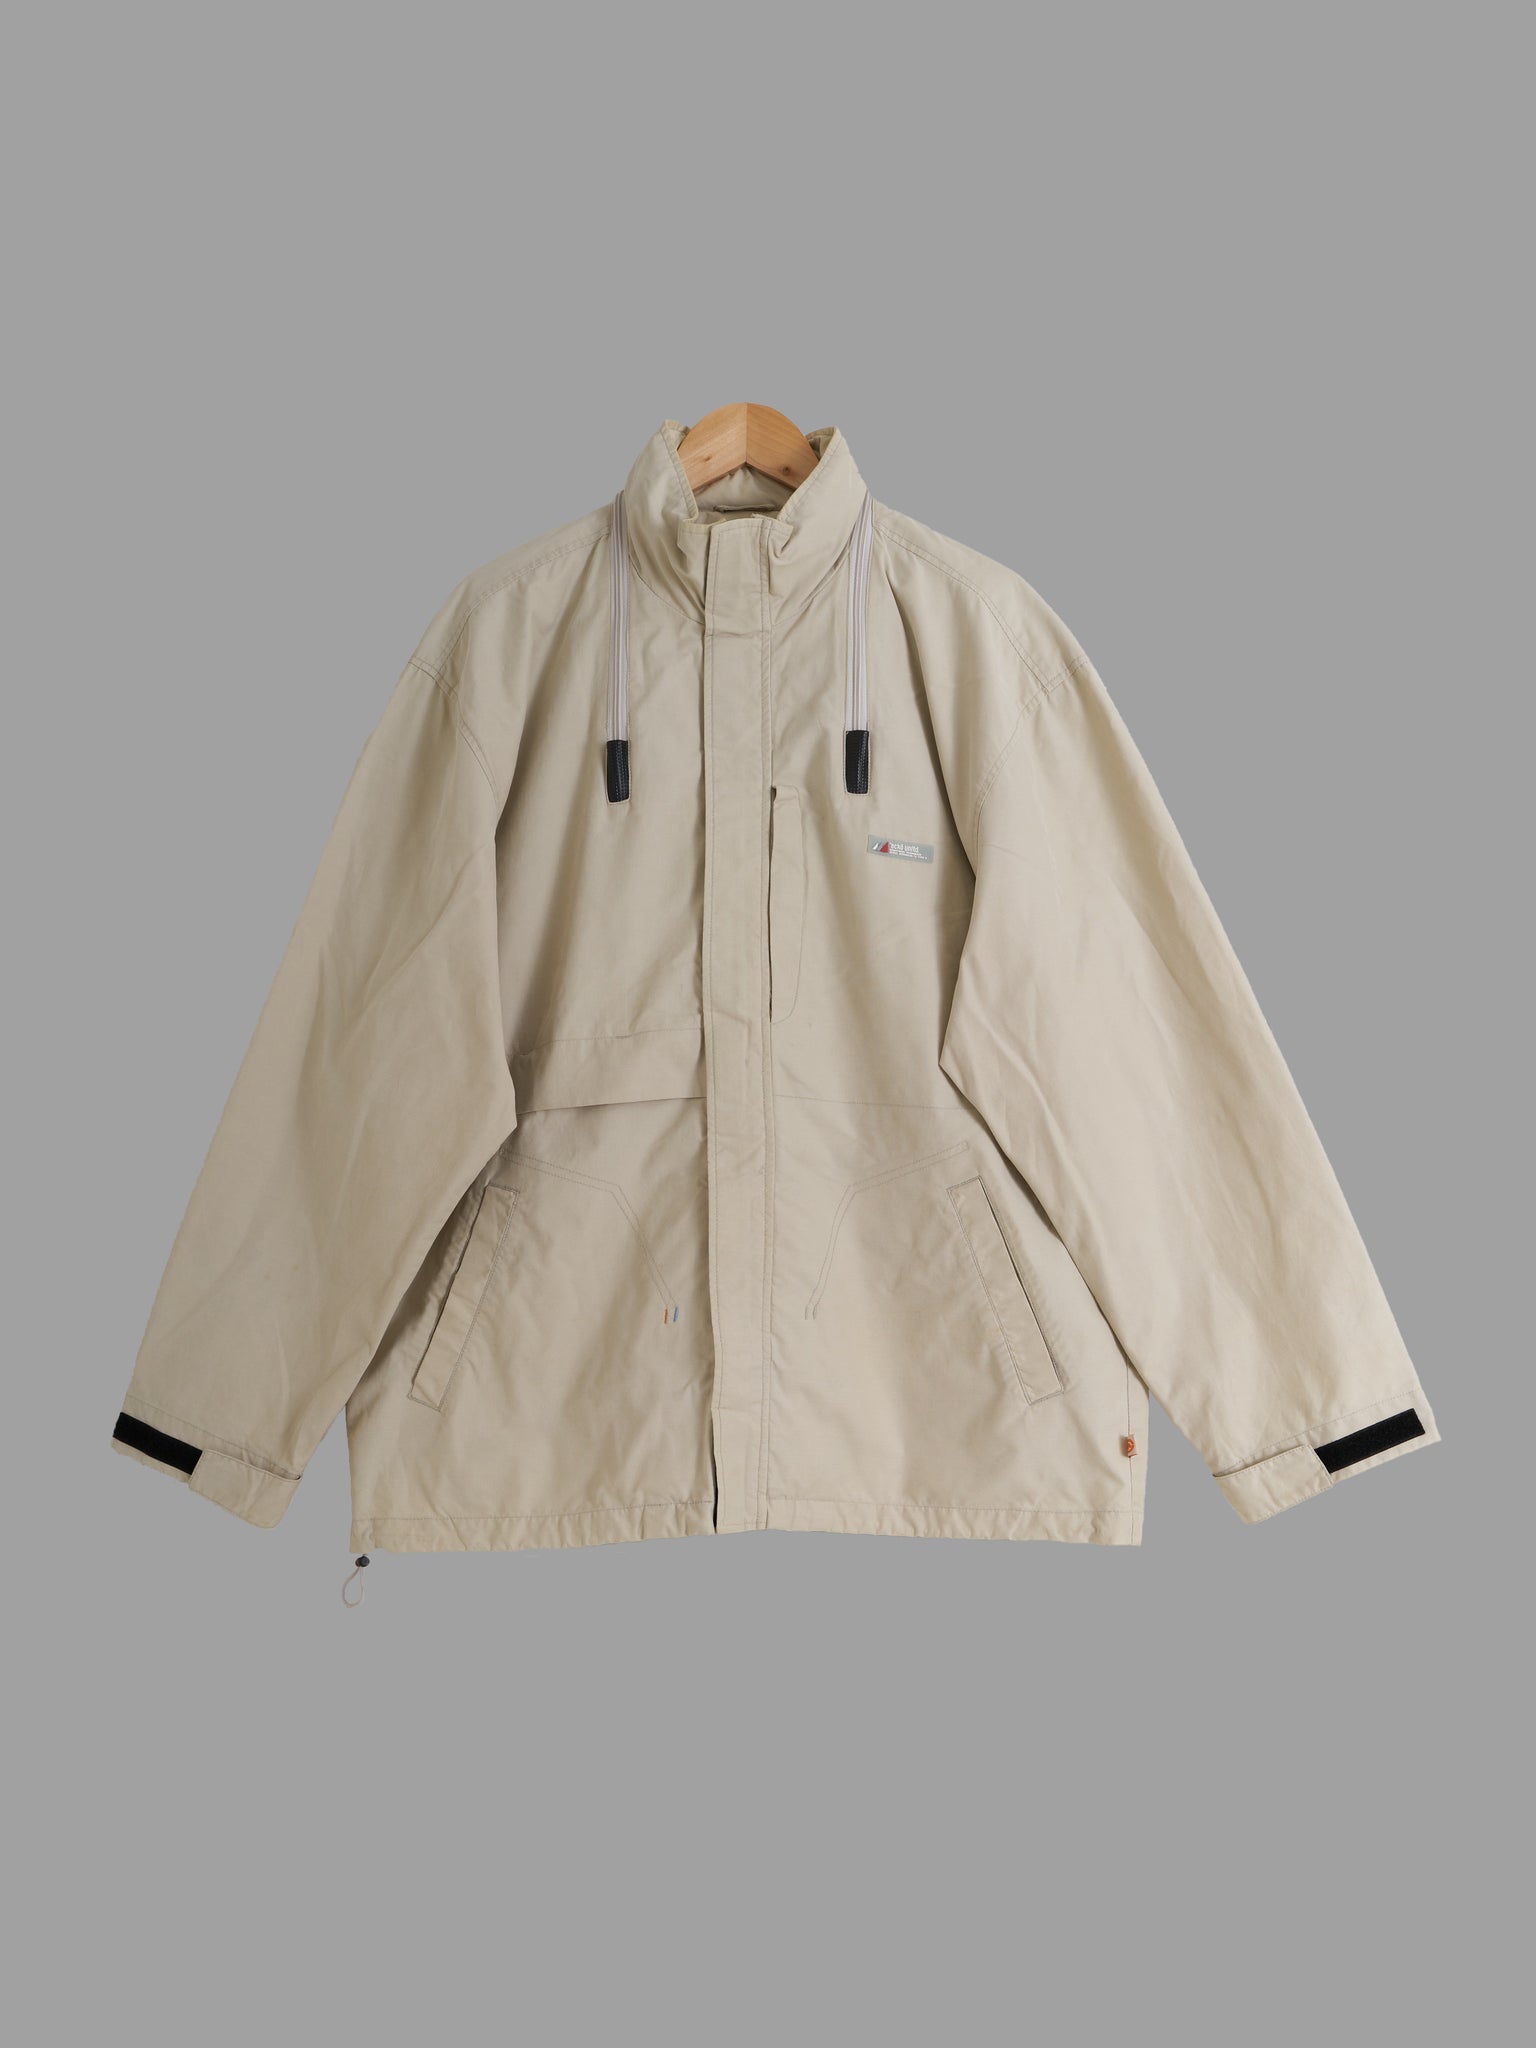 ECKO UNLTD 2000s beige CD pocket jacket with packable hood